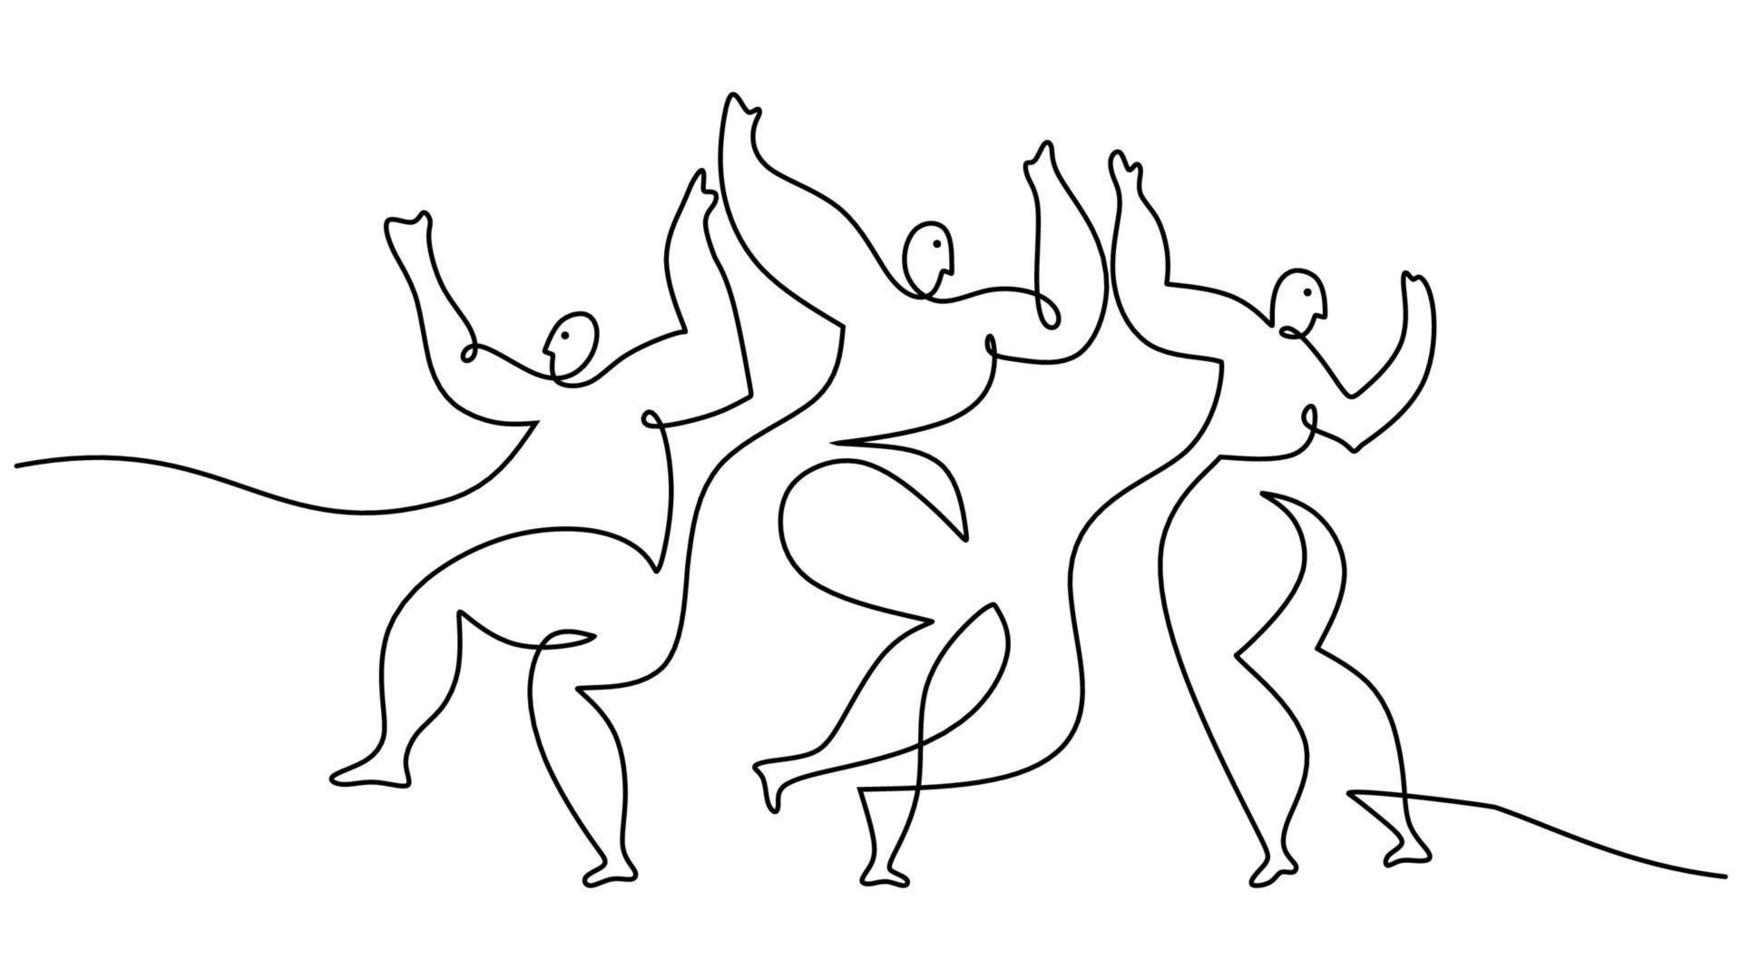 1 solteiro linha desenhando do três dançando pessoas picasso estilo. vetor